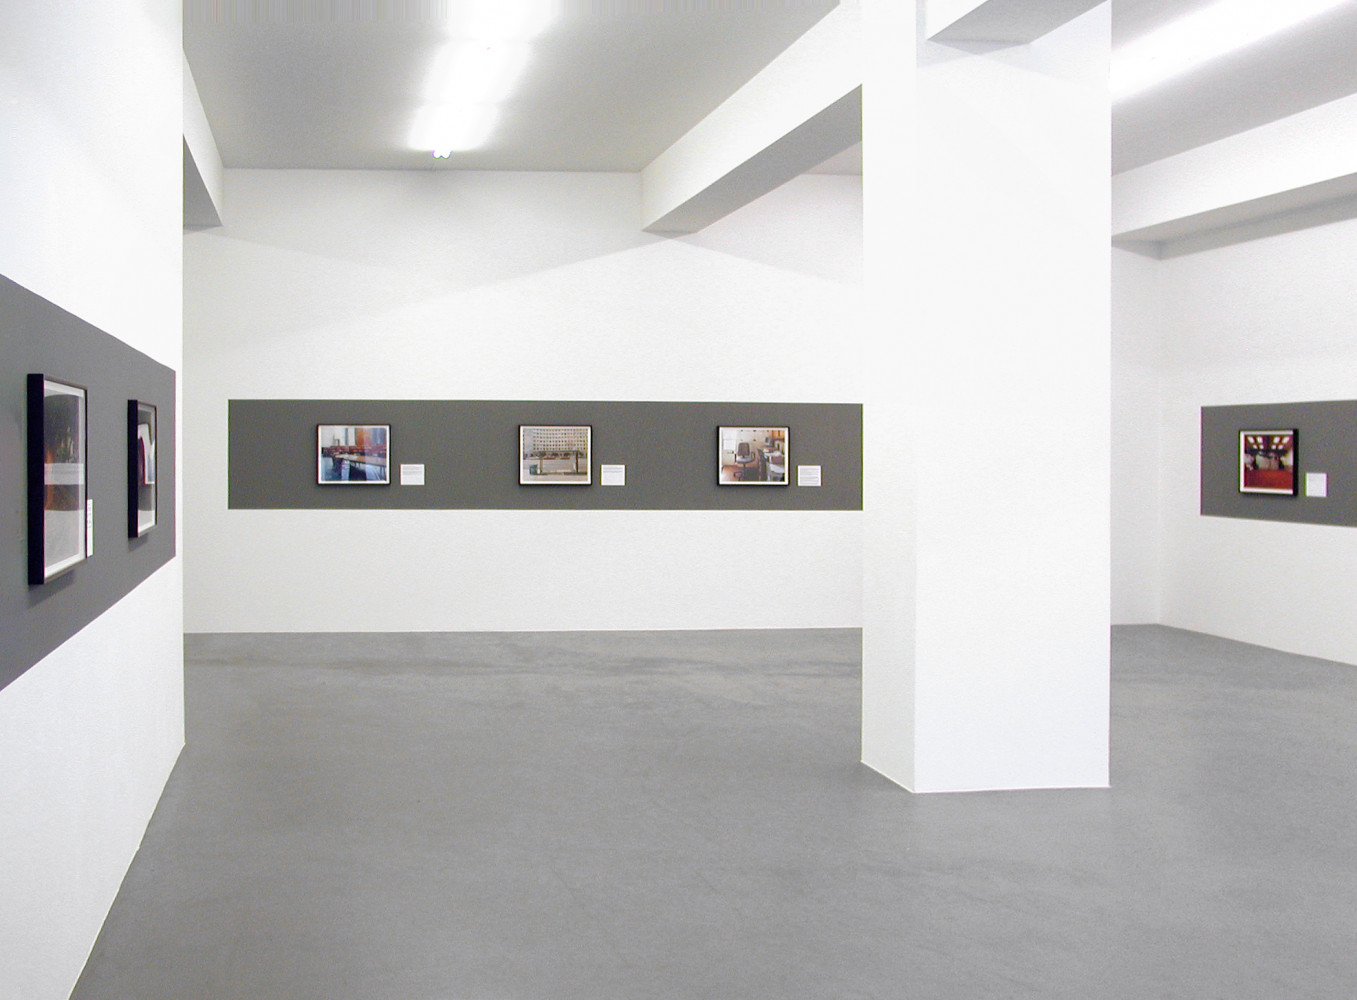 Joel Sternfeld, Installationsansicht, Buchmann Galerie, 2009